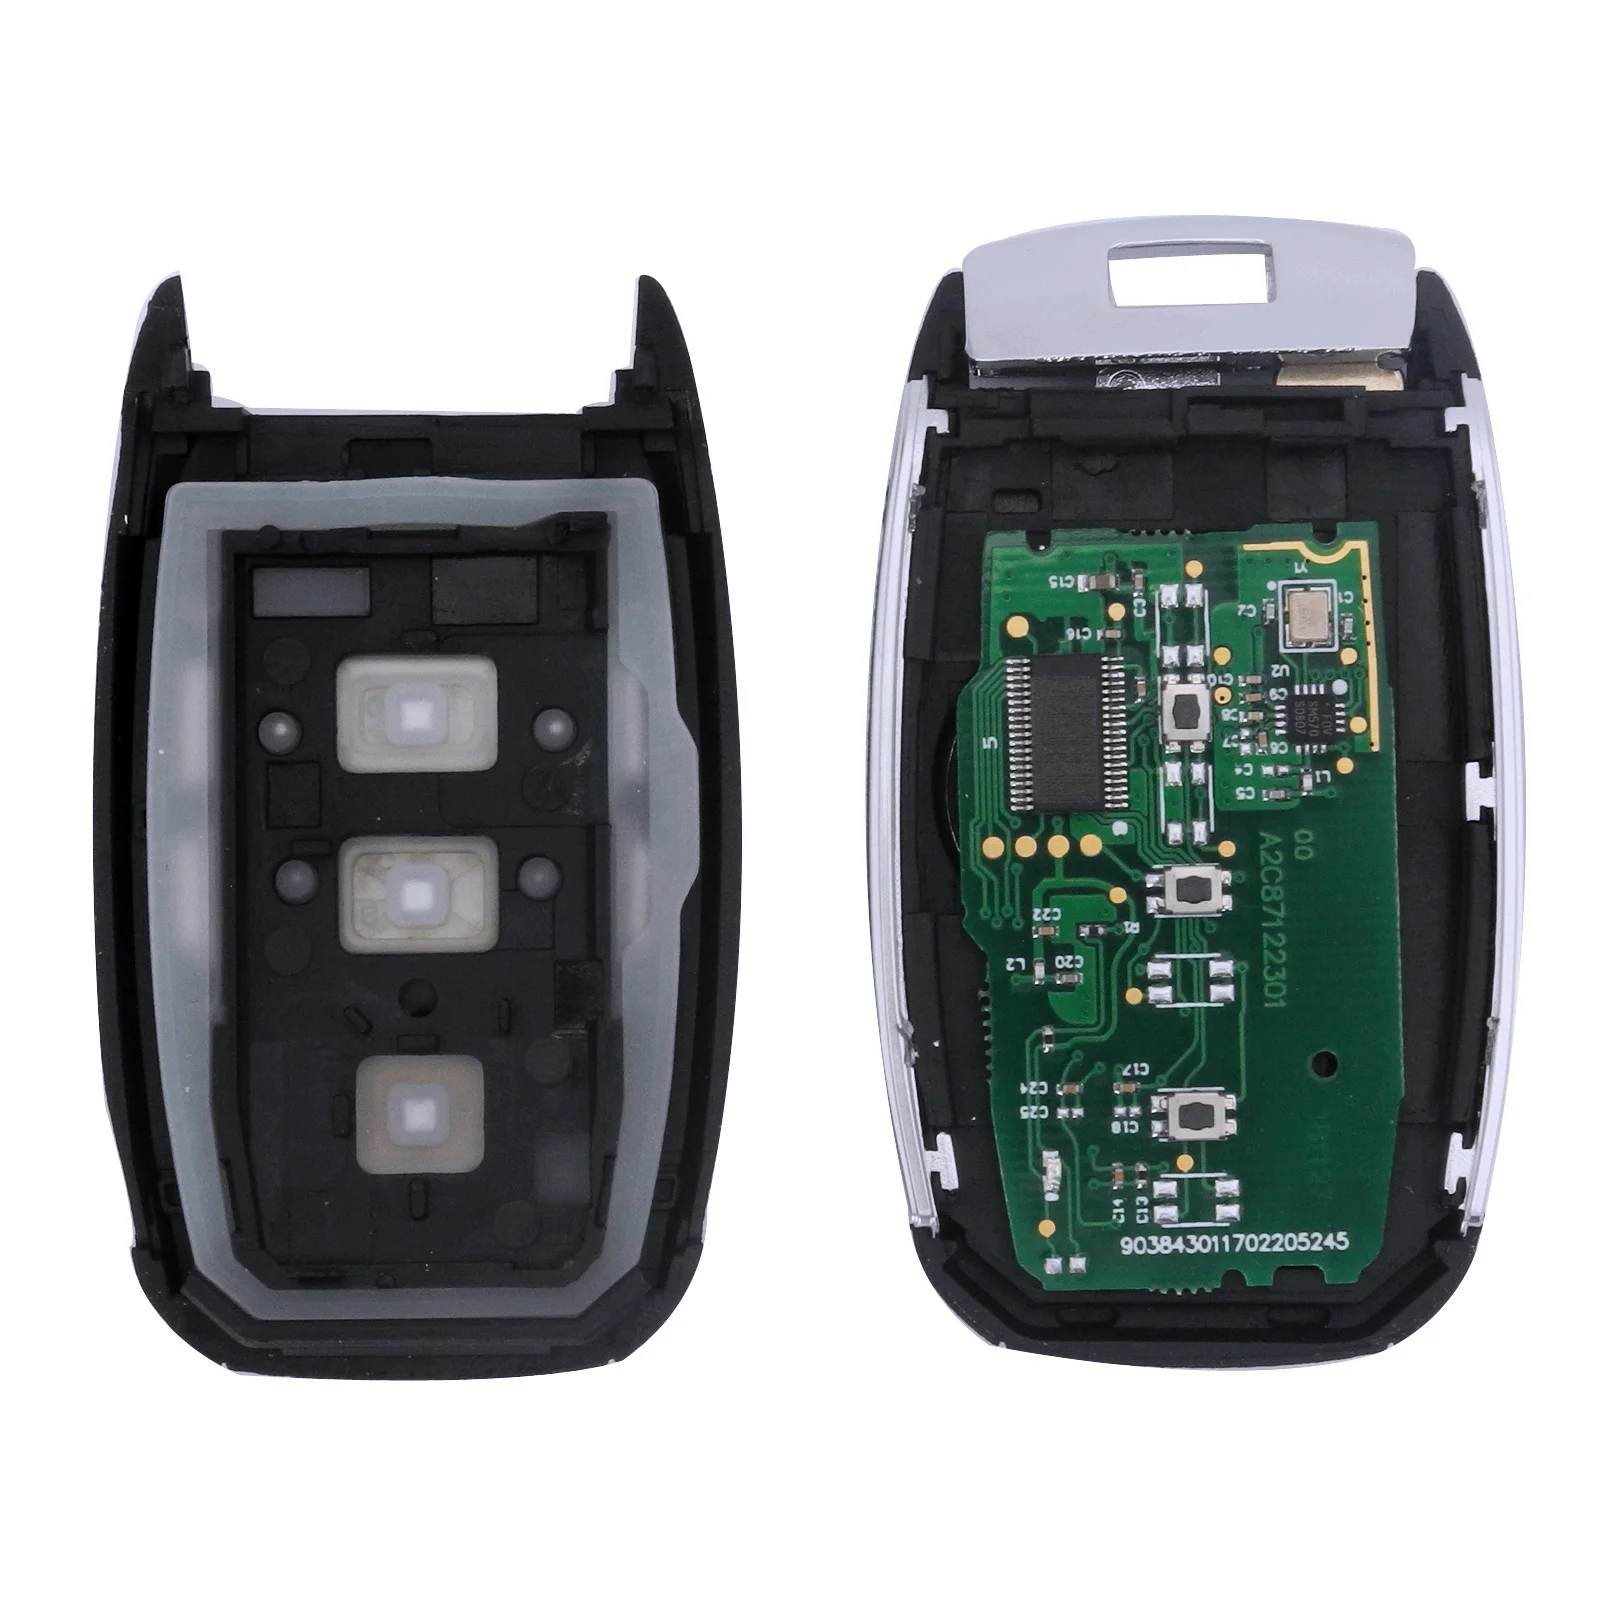 jingyuqin Remote Control Car Key For KIA K5 Sportage Sorento 433MHZ Electronic Circuit Board Hyn14 Blade Smart Auto Key 3 Button